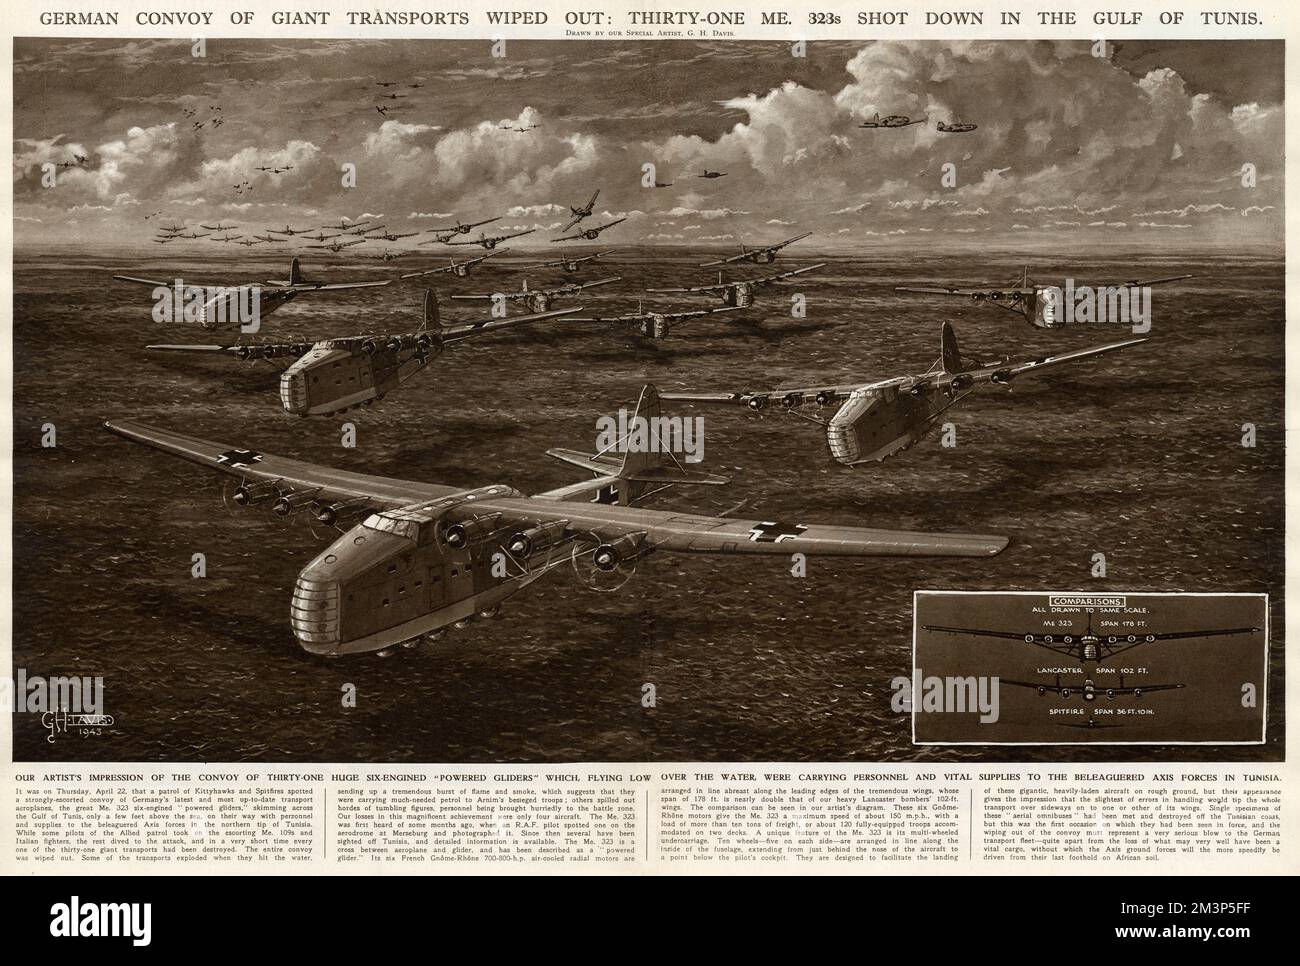 Un convoi allemand de transports géants a été détruit: 31 Messerschmitt ME323s abattu dans le golfe de Tunis, deuxième Guerre mondiale. Les gros avions à six moteurs transportaient du personnel et des fournitures essentielles aux forces de l'axe en Tunisie. Date : 22 avril 1943 Banque D'Images